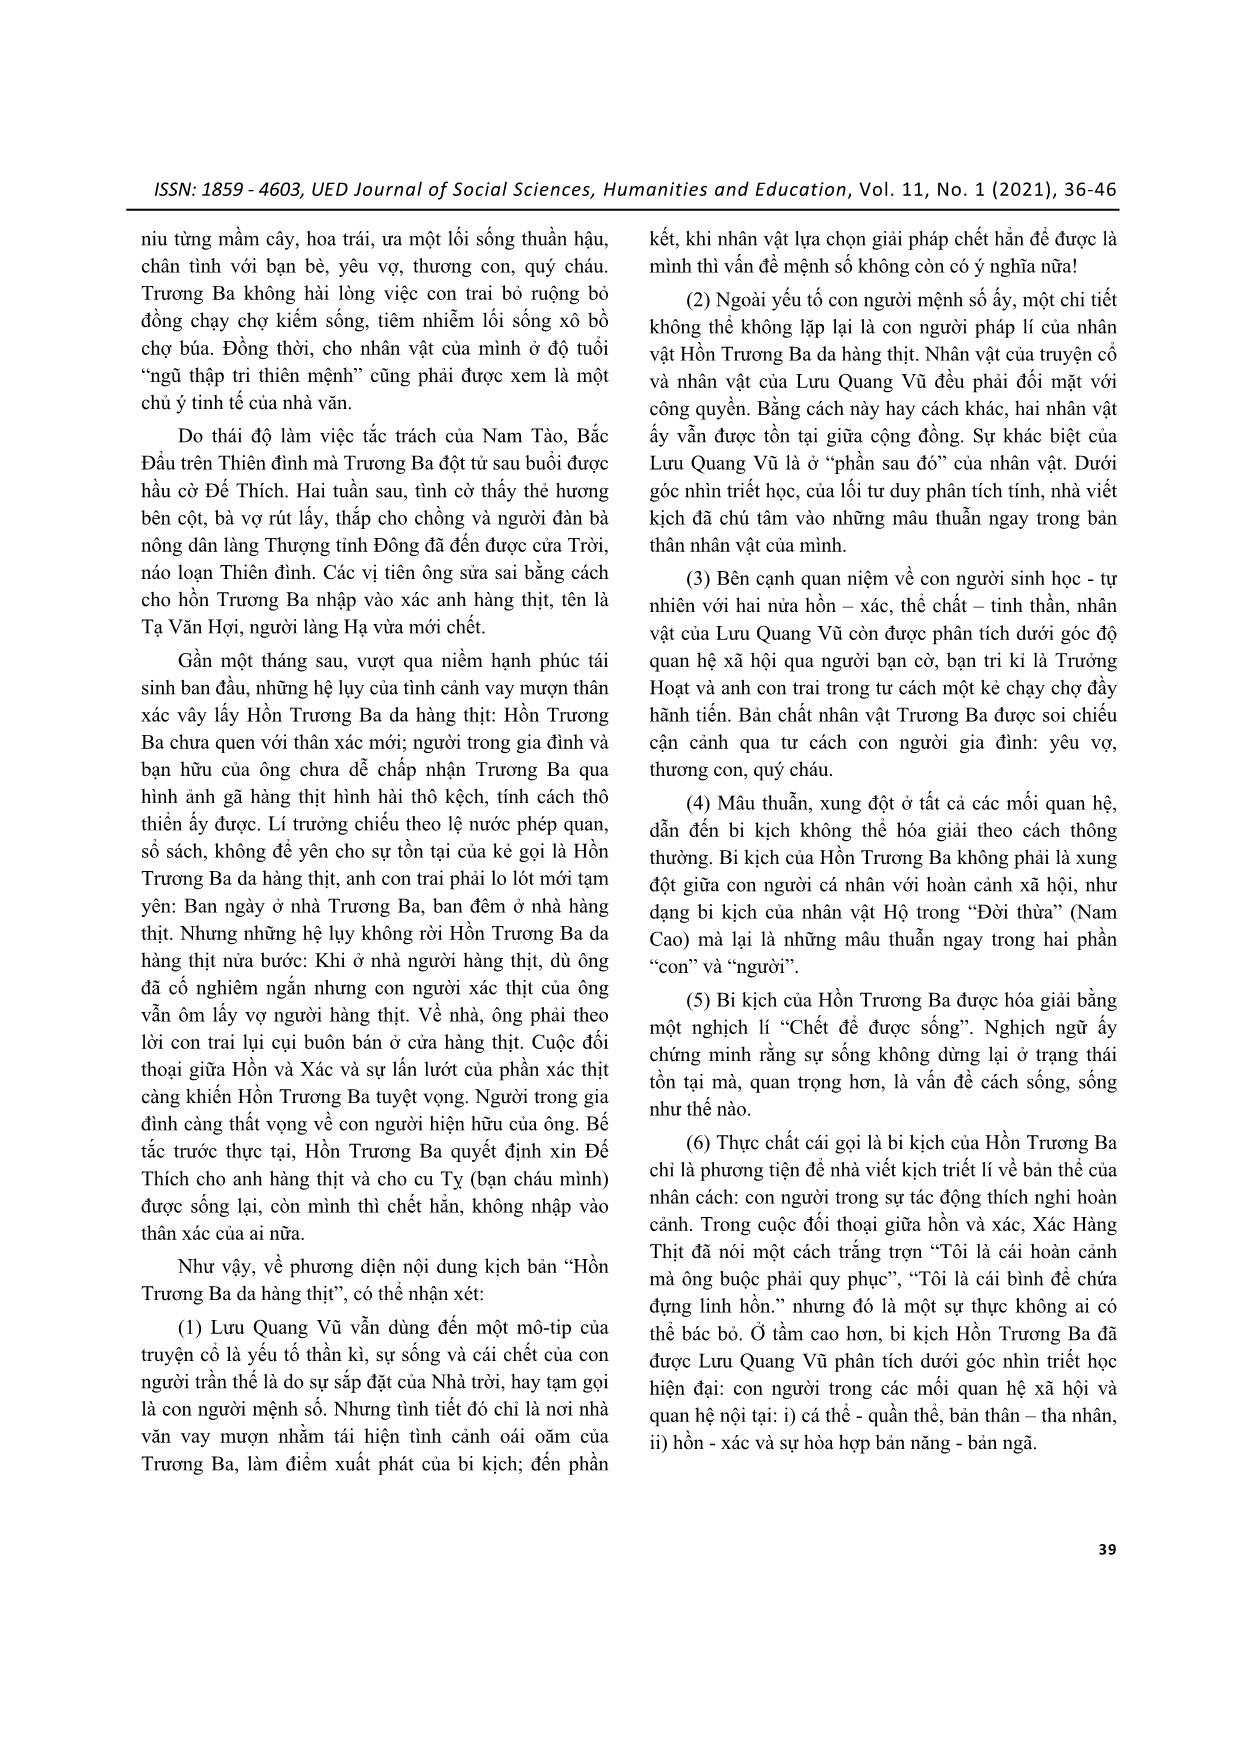 Ý tưởng triết luận và sáng tạo nghệ thuật của Lưu Quang Vũ trong kịch bản “Hồn Trương Ba da hàng thịt” trang 4